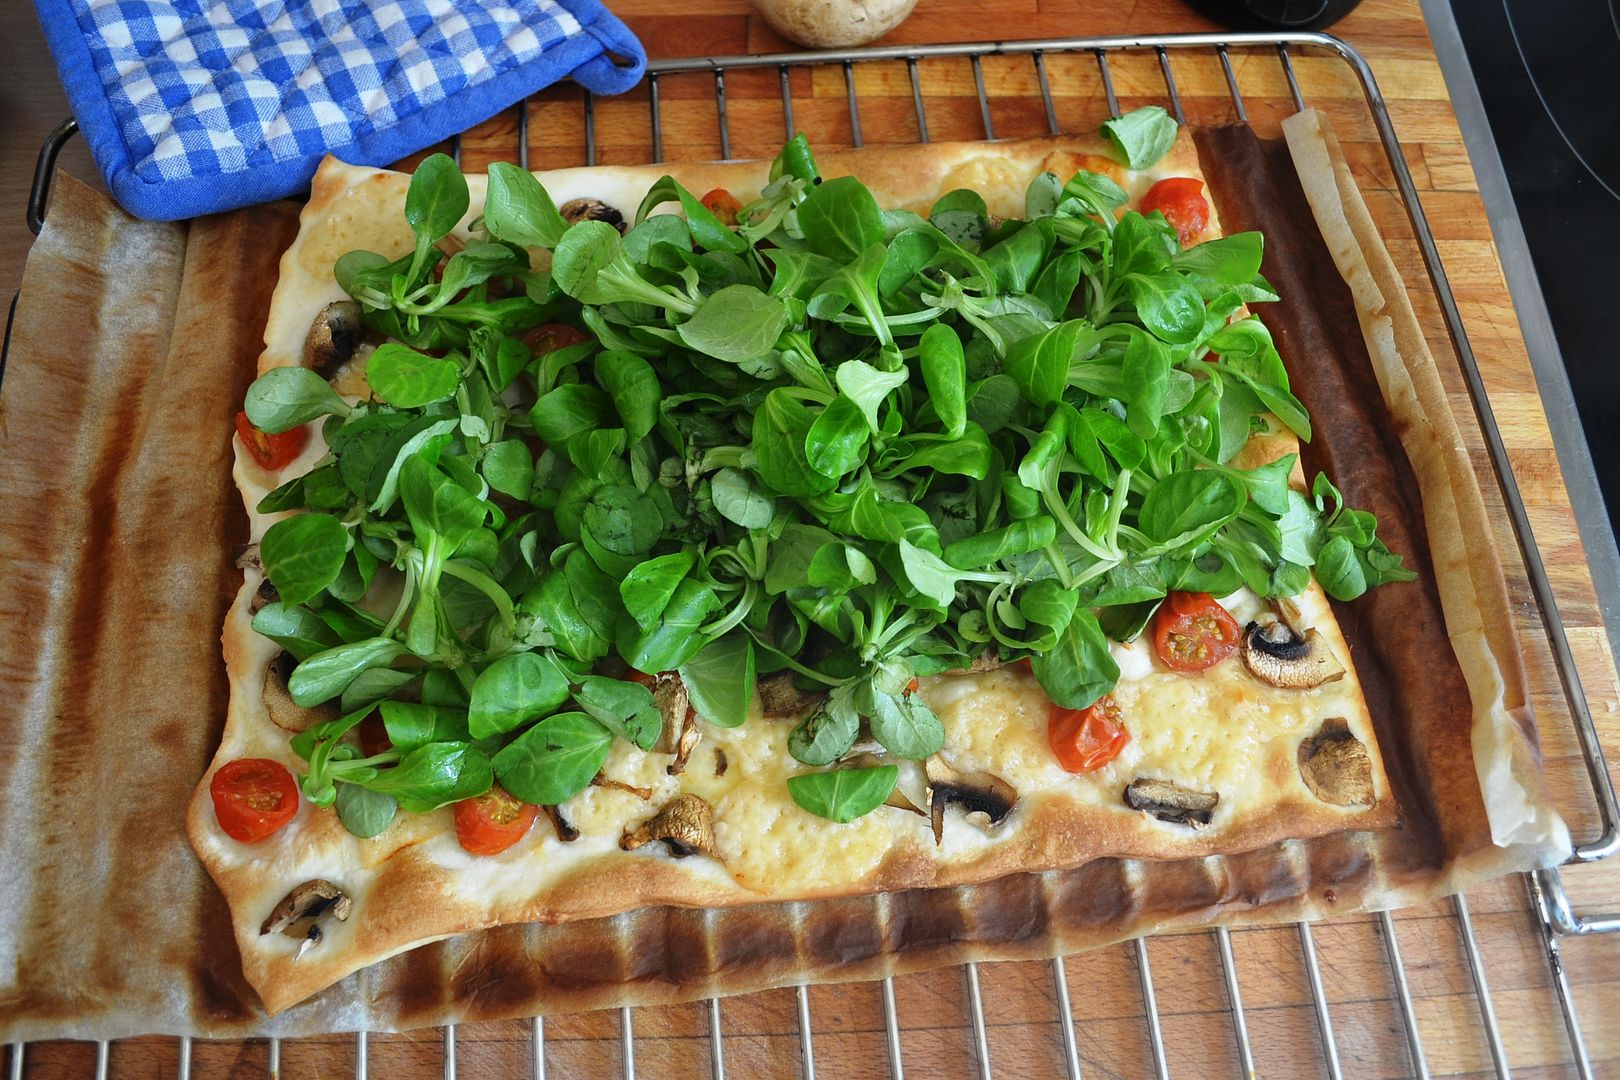  Receta de como hacer pizza fácil sana y rica 